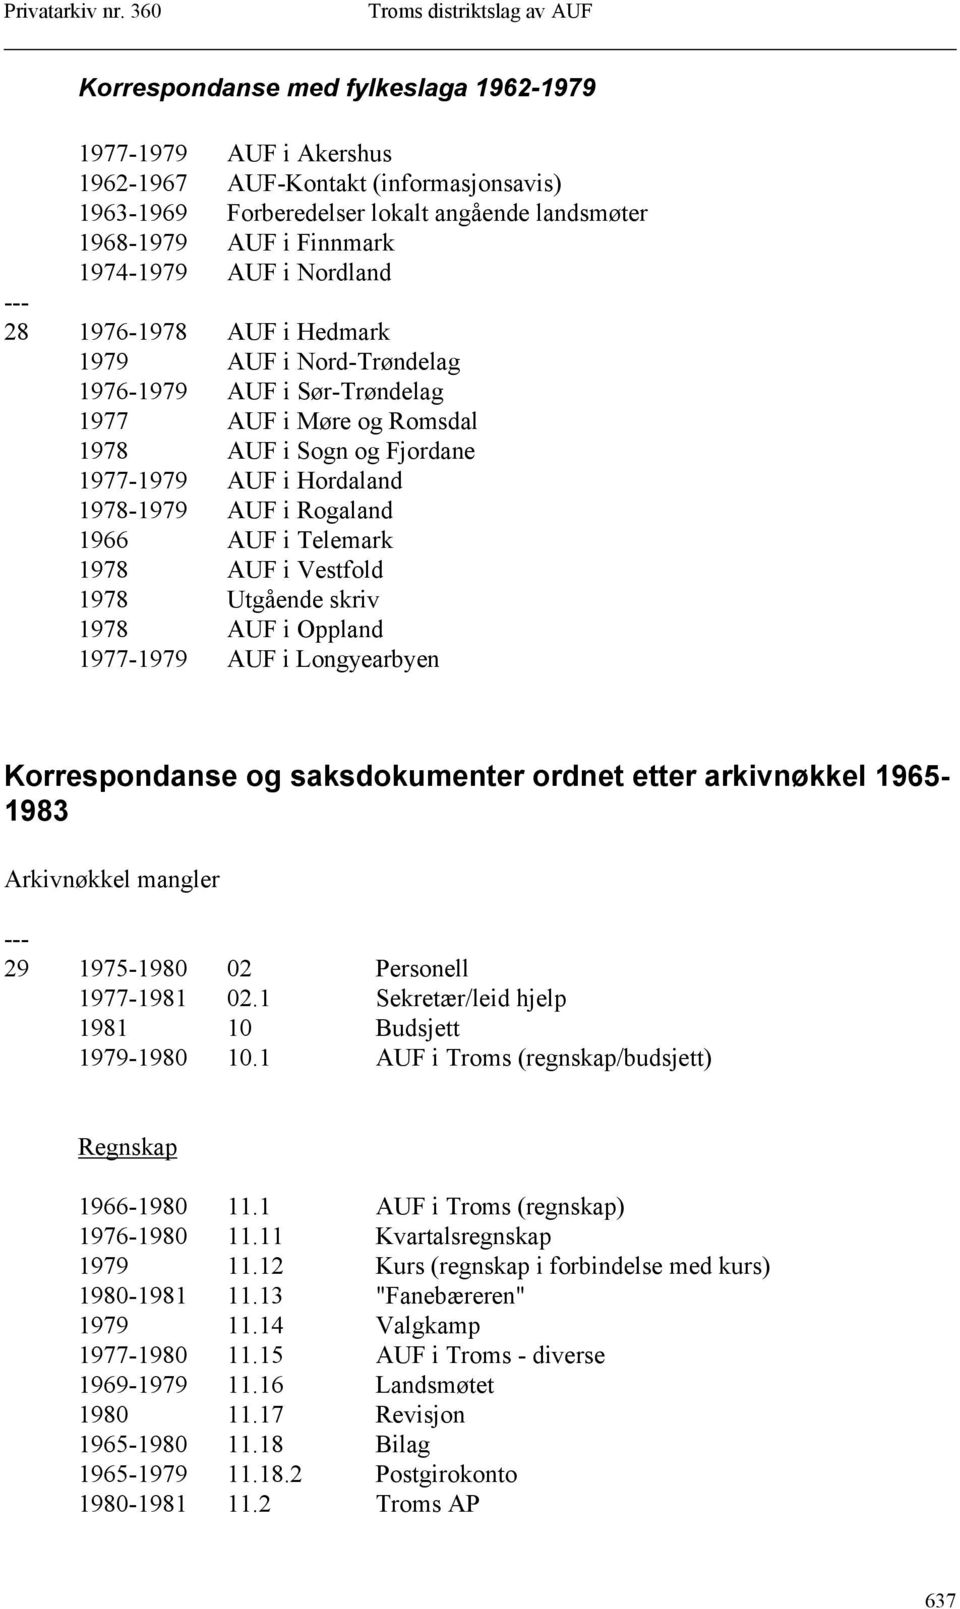 1966 AUF i Telemark 1978 AUF i Vestfold 1978 Utgående skriv 1978 AUF i Oppland 1977-1979 AUF i Longyearbyen Korrespondanse og saksdokumenter ordnet etter arkivnøkkel 1965-1983 Arkivnøkkel mangler 29